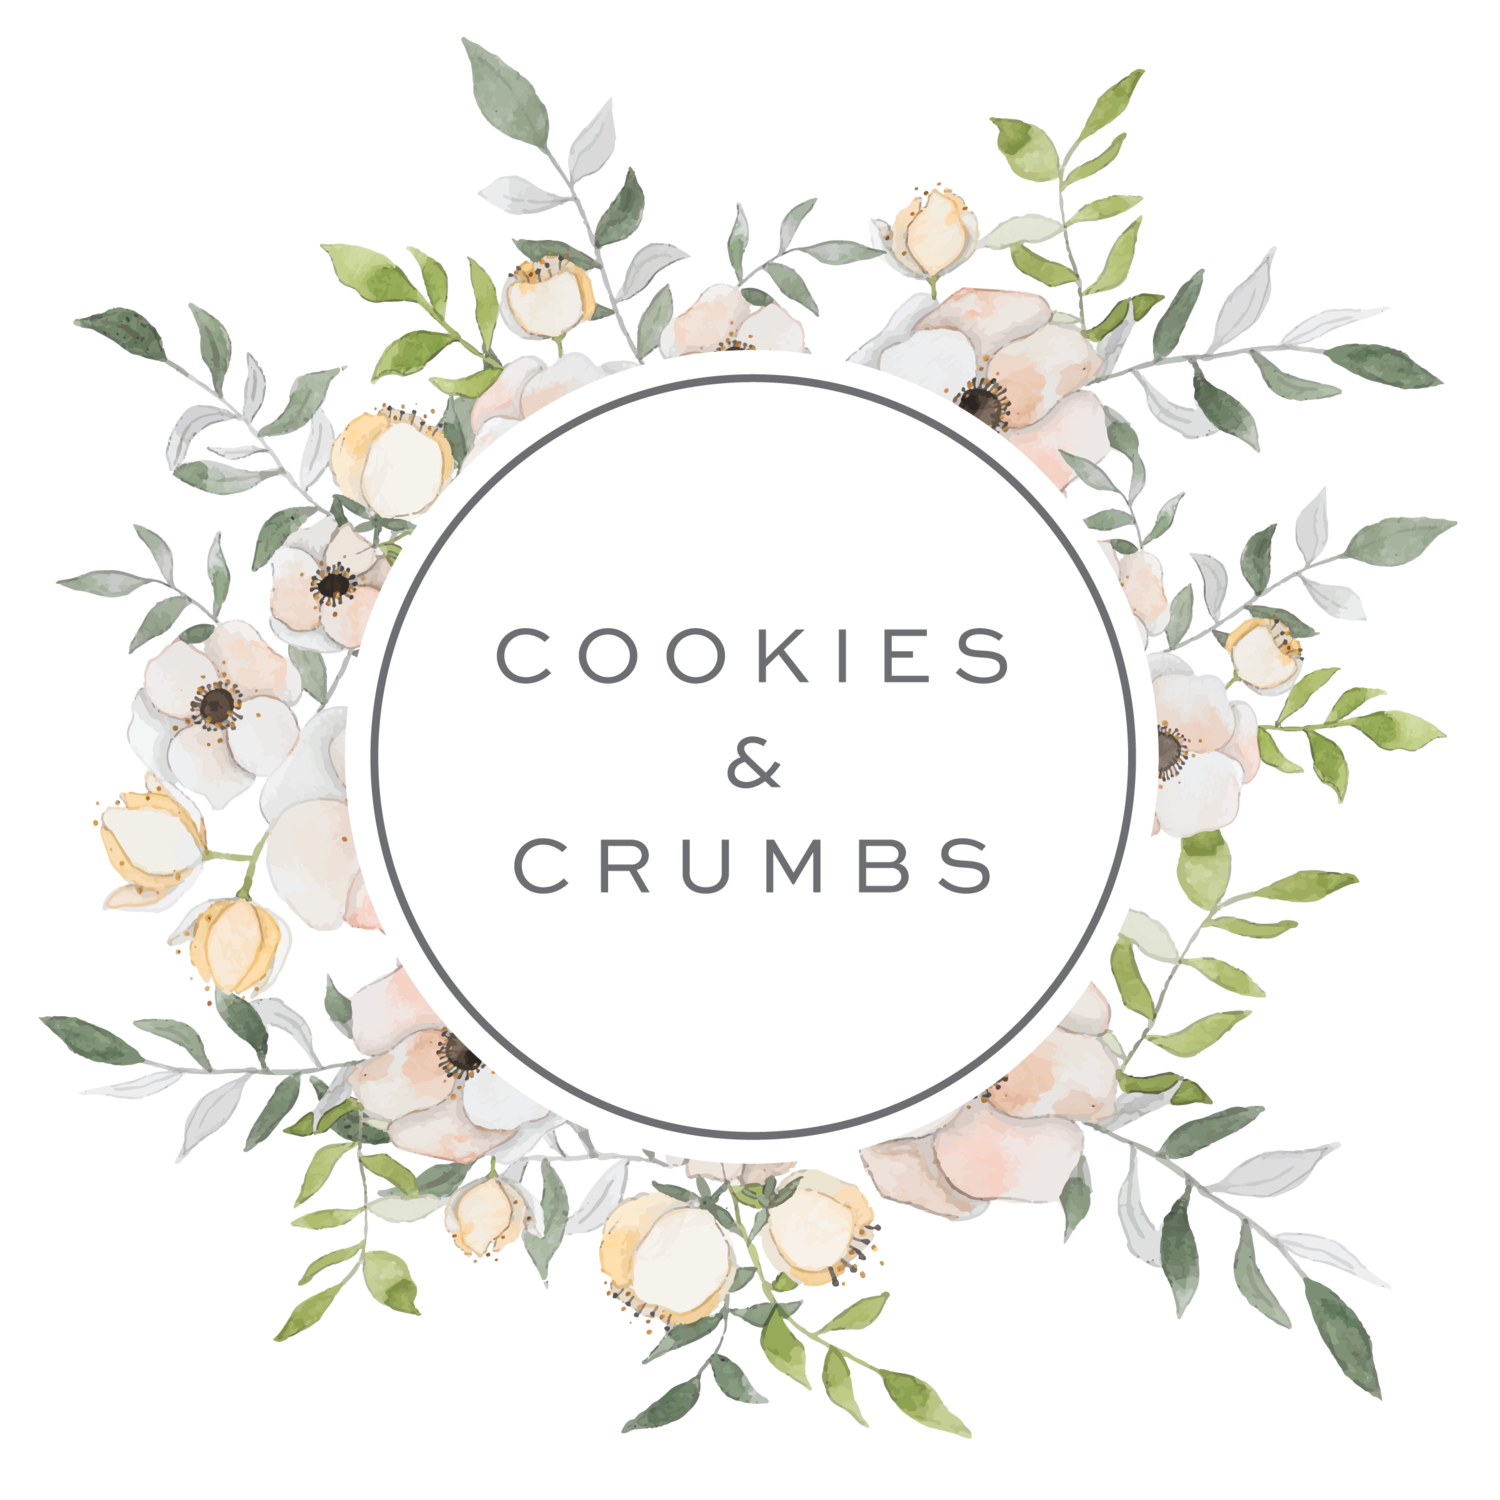 Cookies & Crumbs 